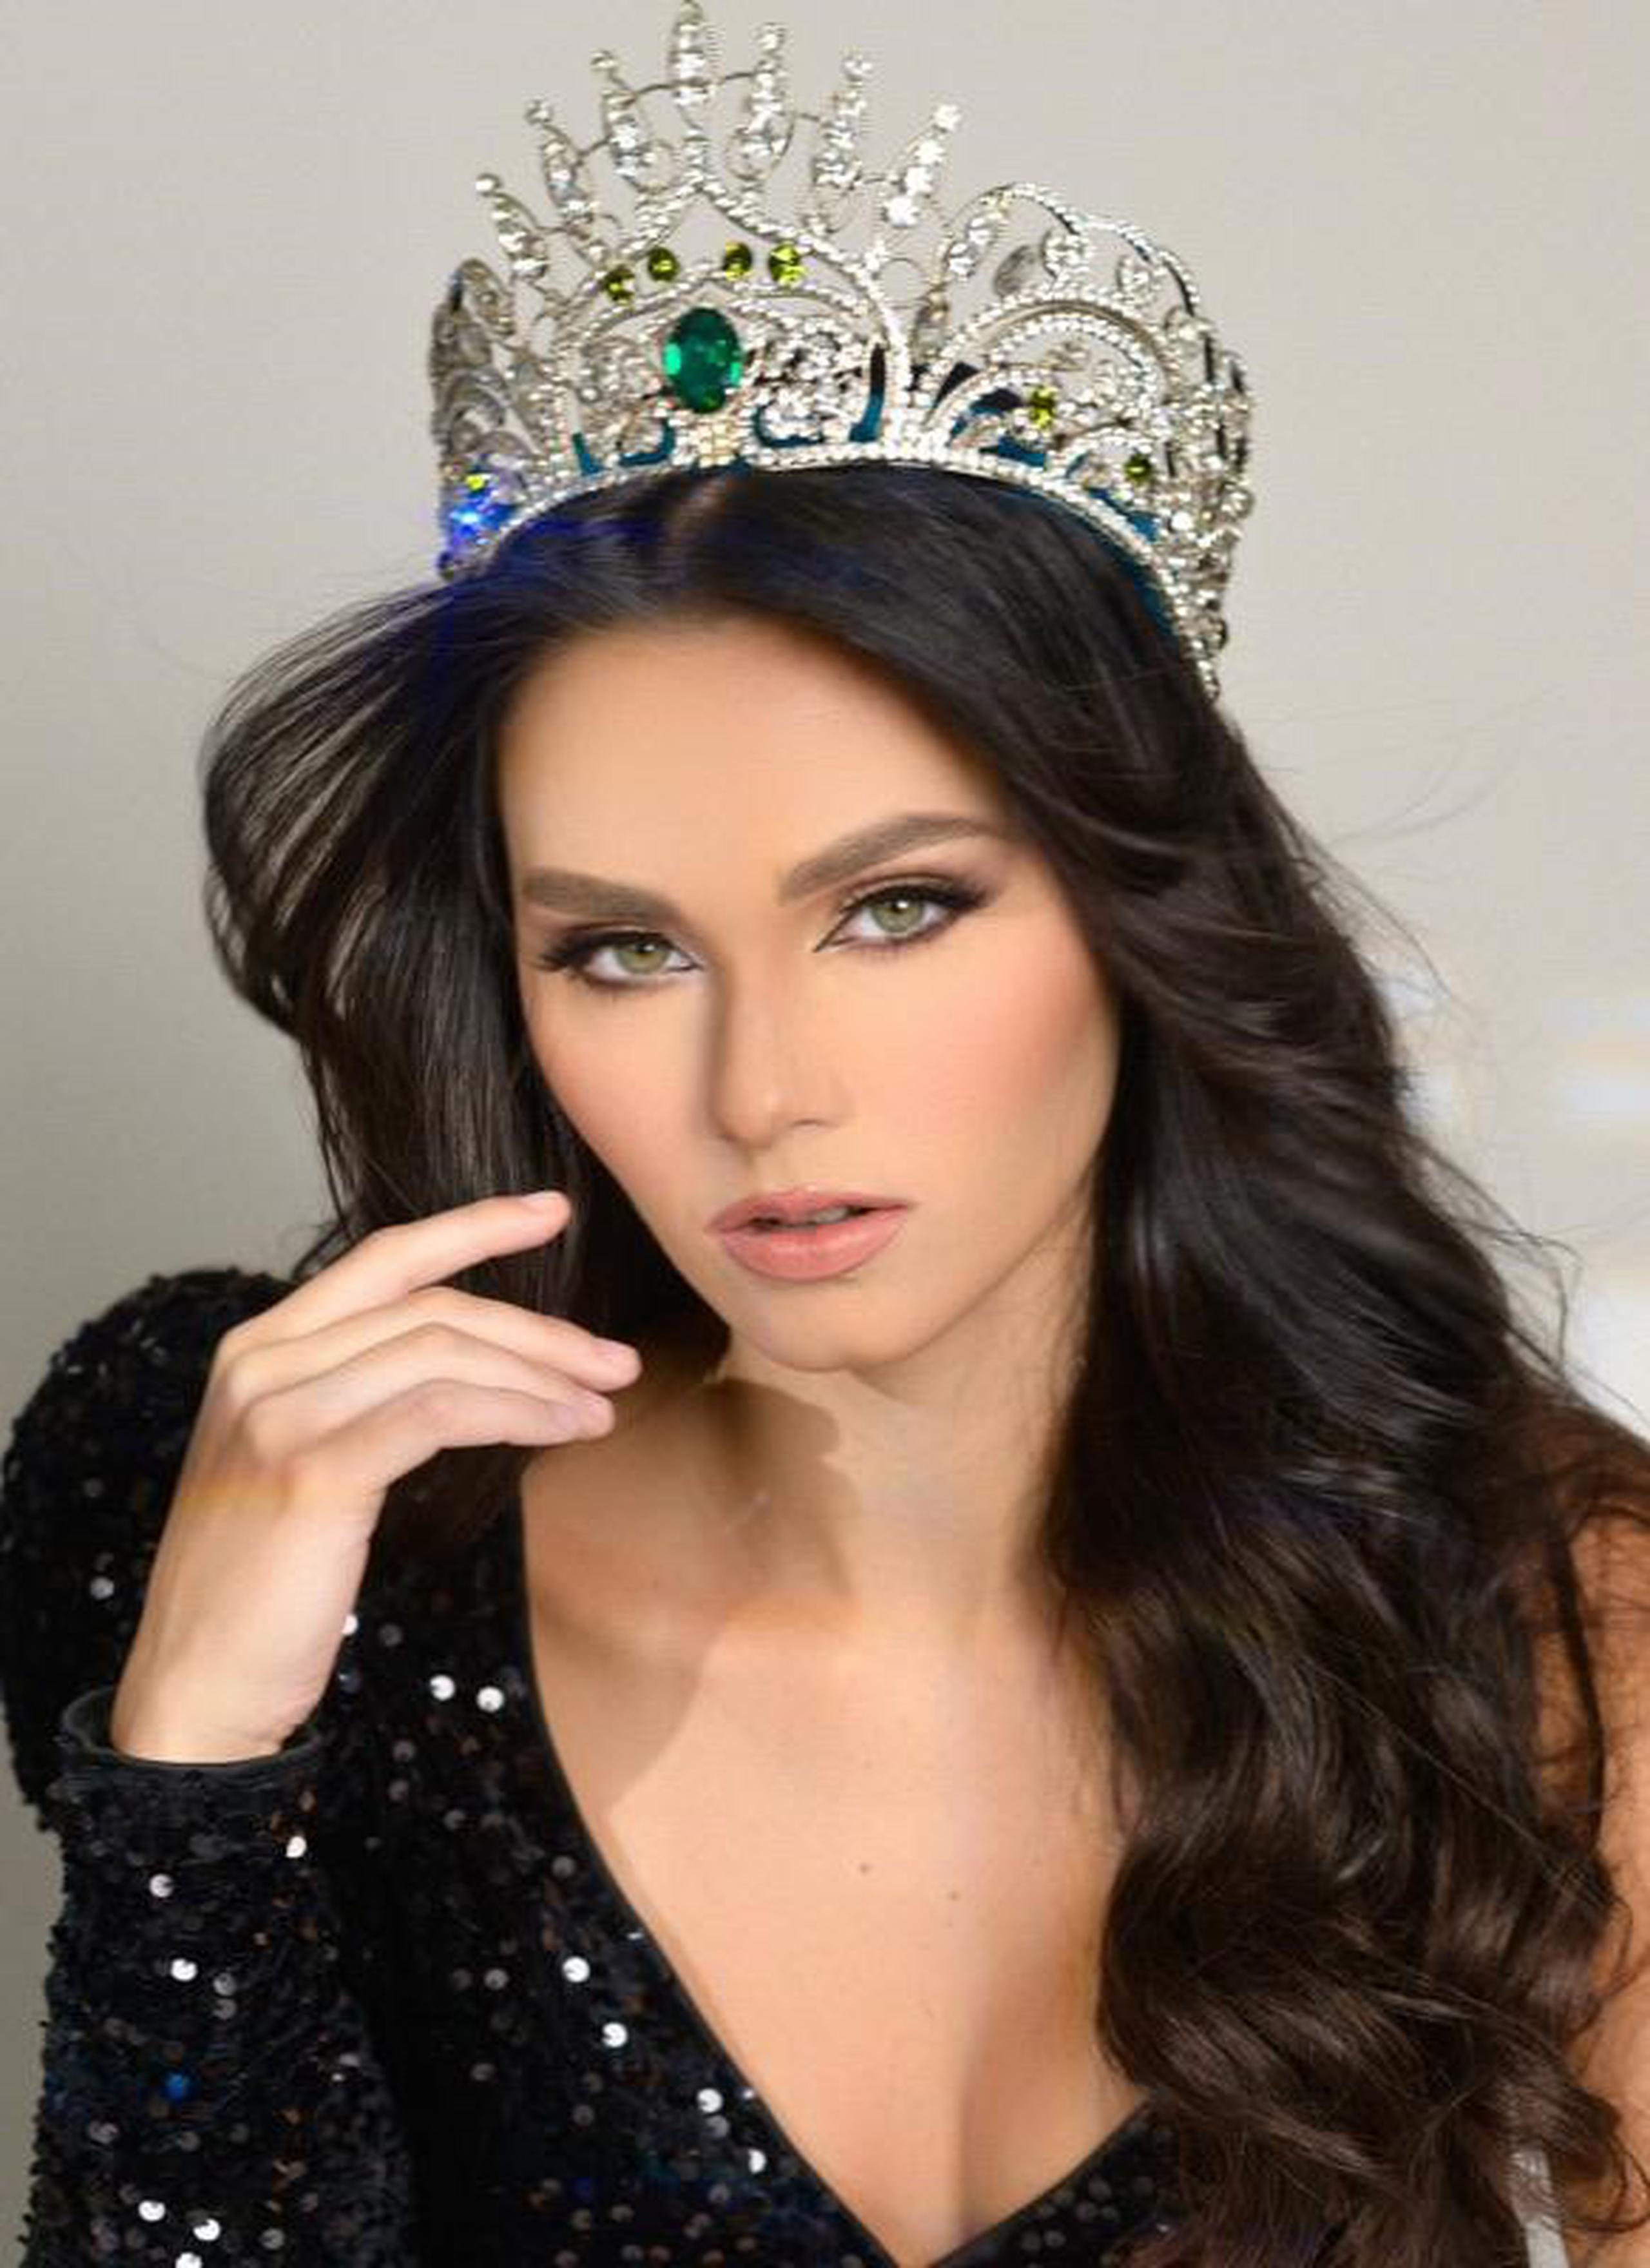 La actual soberana boricua es Victoria Arocho, quien competirá en diciembre en Miss Earth 2023 en Vietnam.